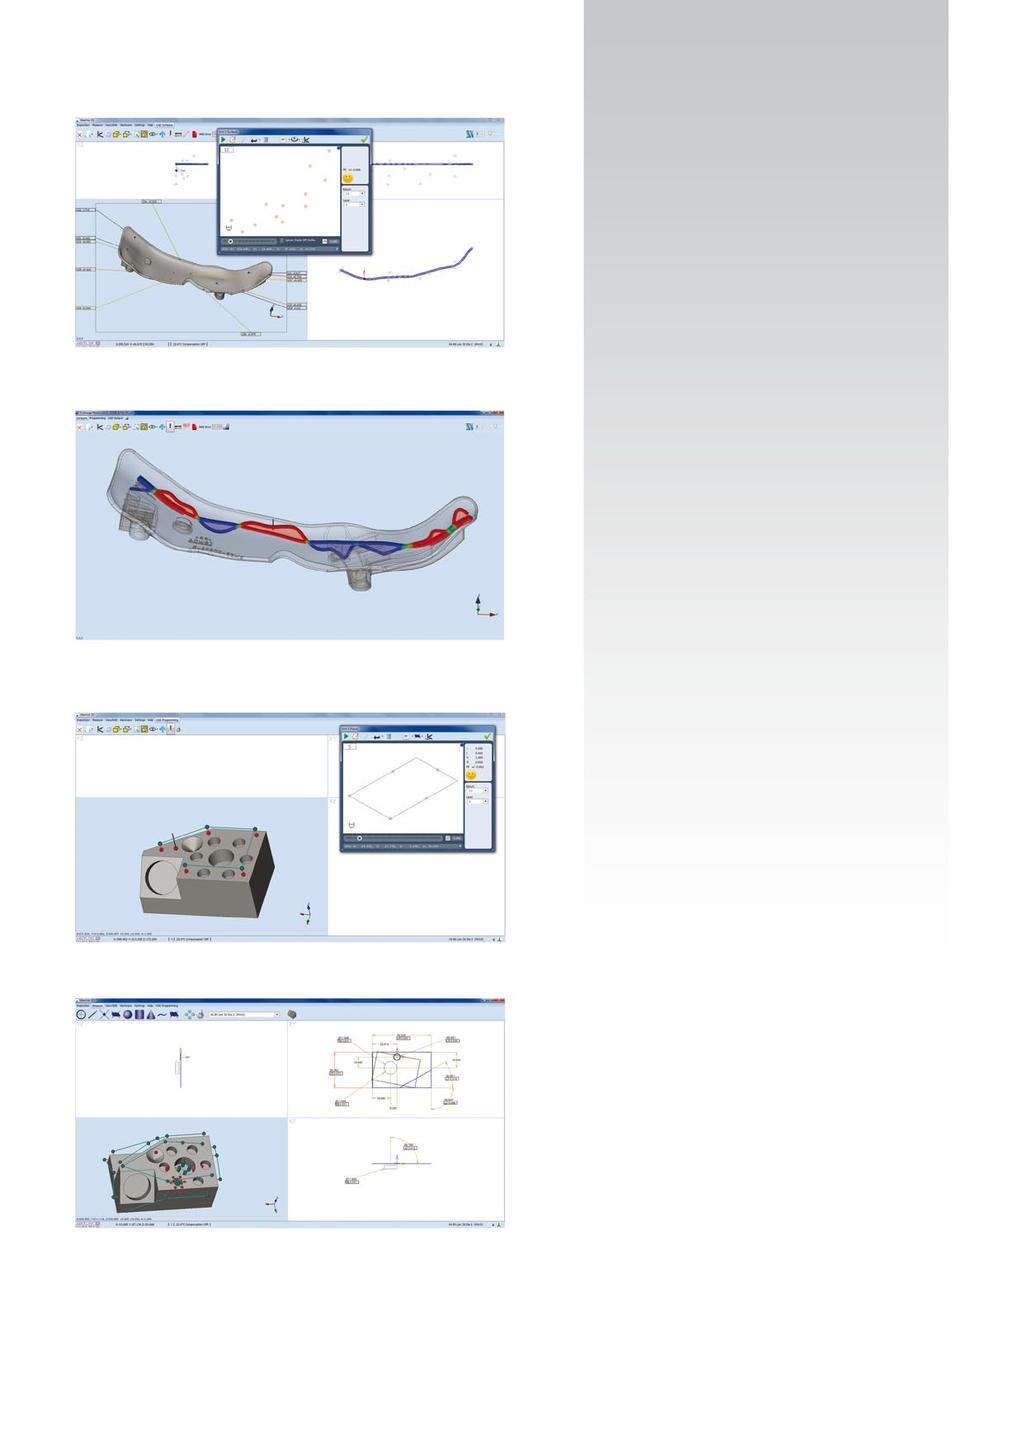 18 Softwarové moduly CAD CAD modul porovnávání Softwarový modu Aberlink CAD Comparison je určen pro porovnávání měřených bodů s CAD modelem.